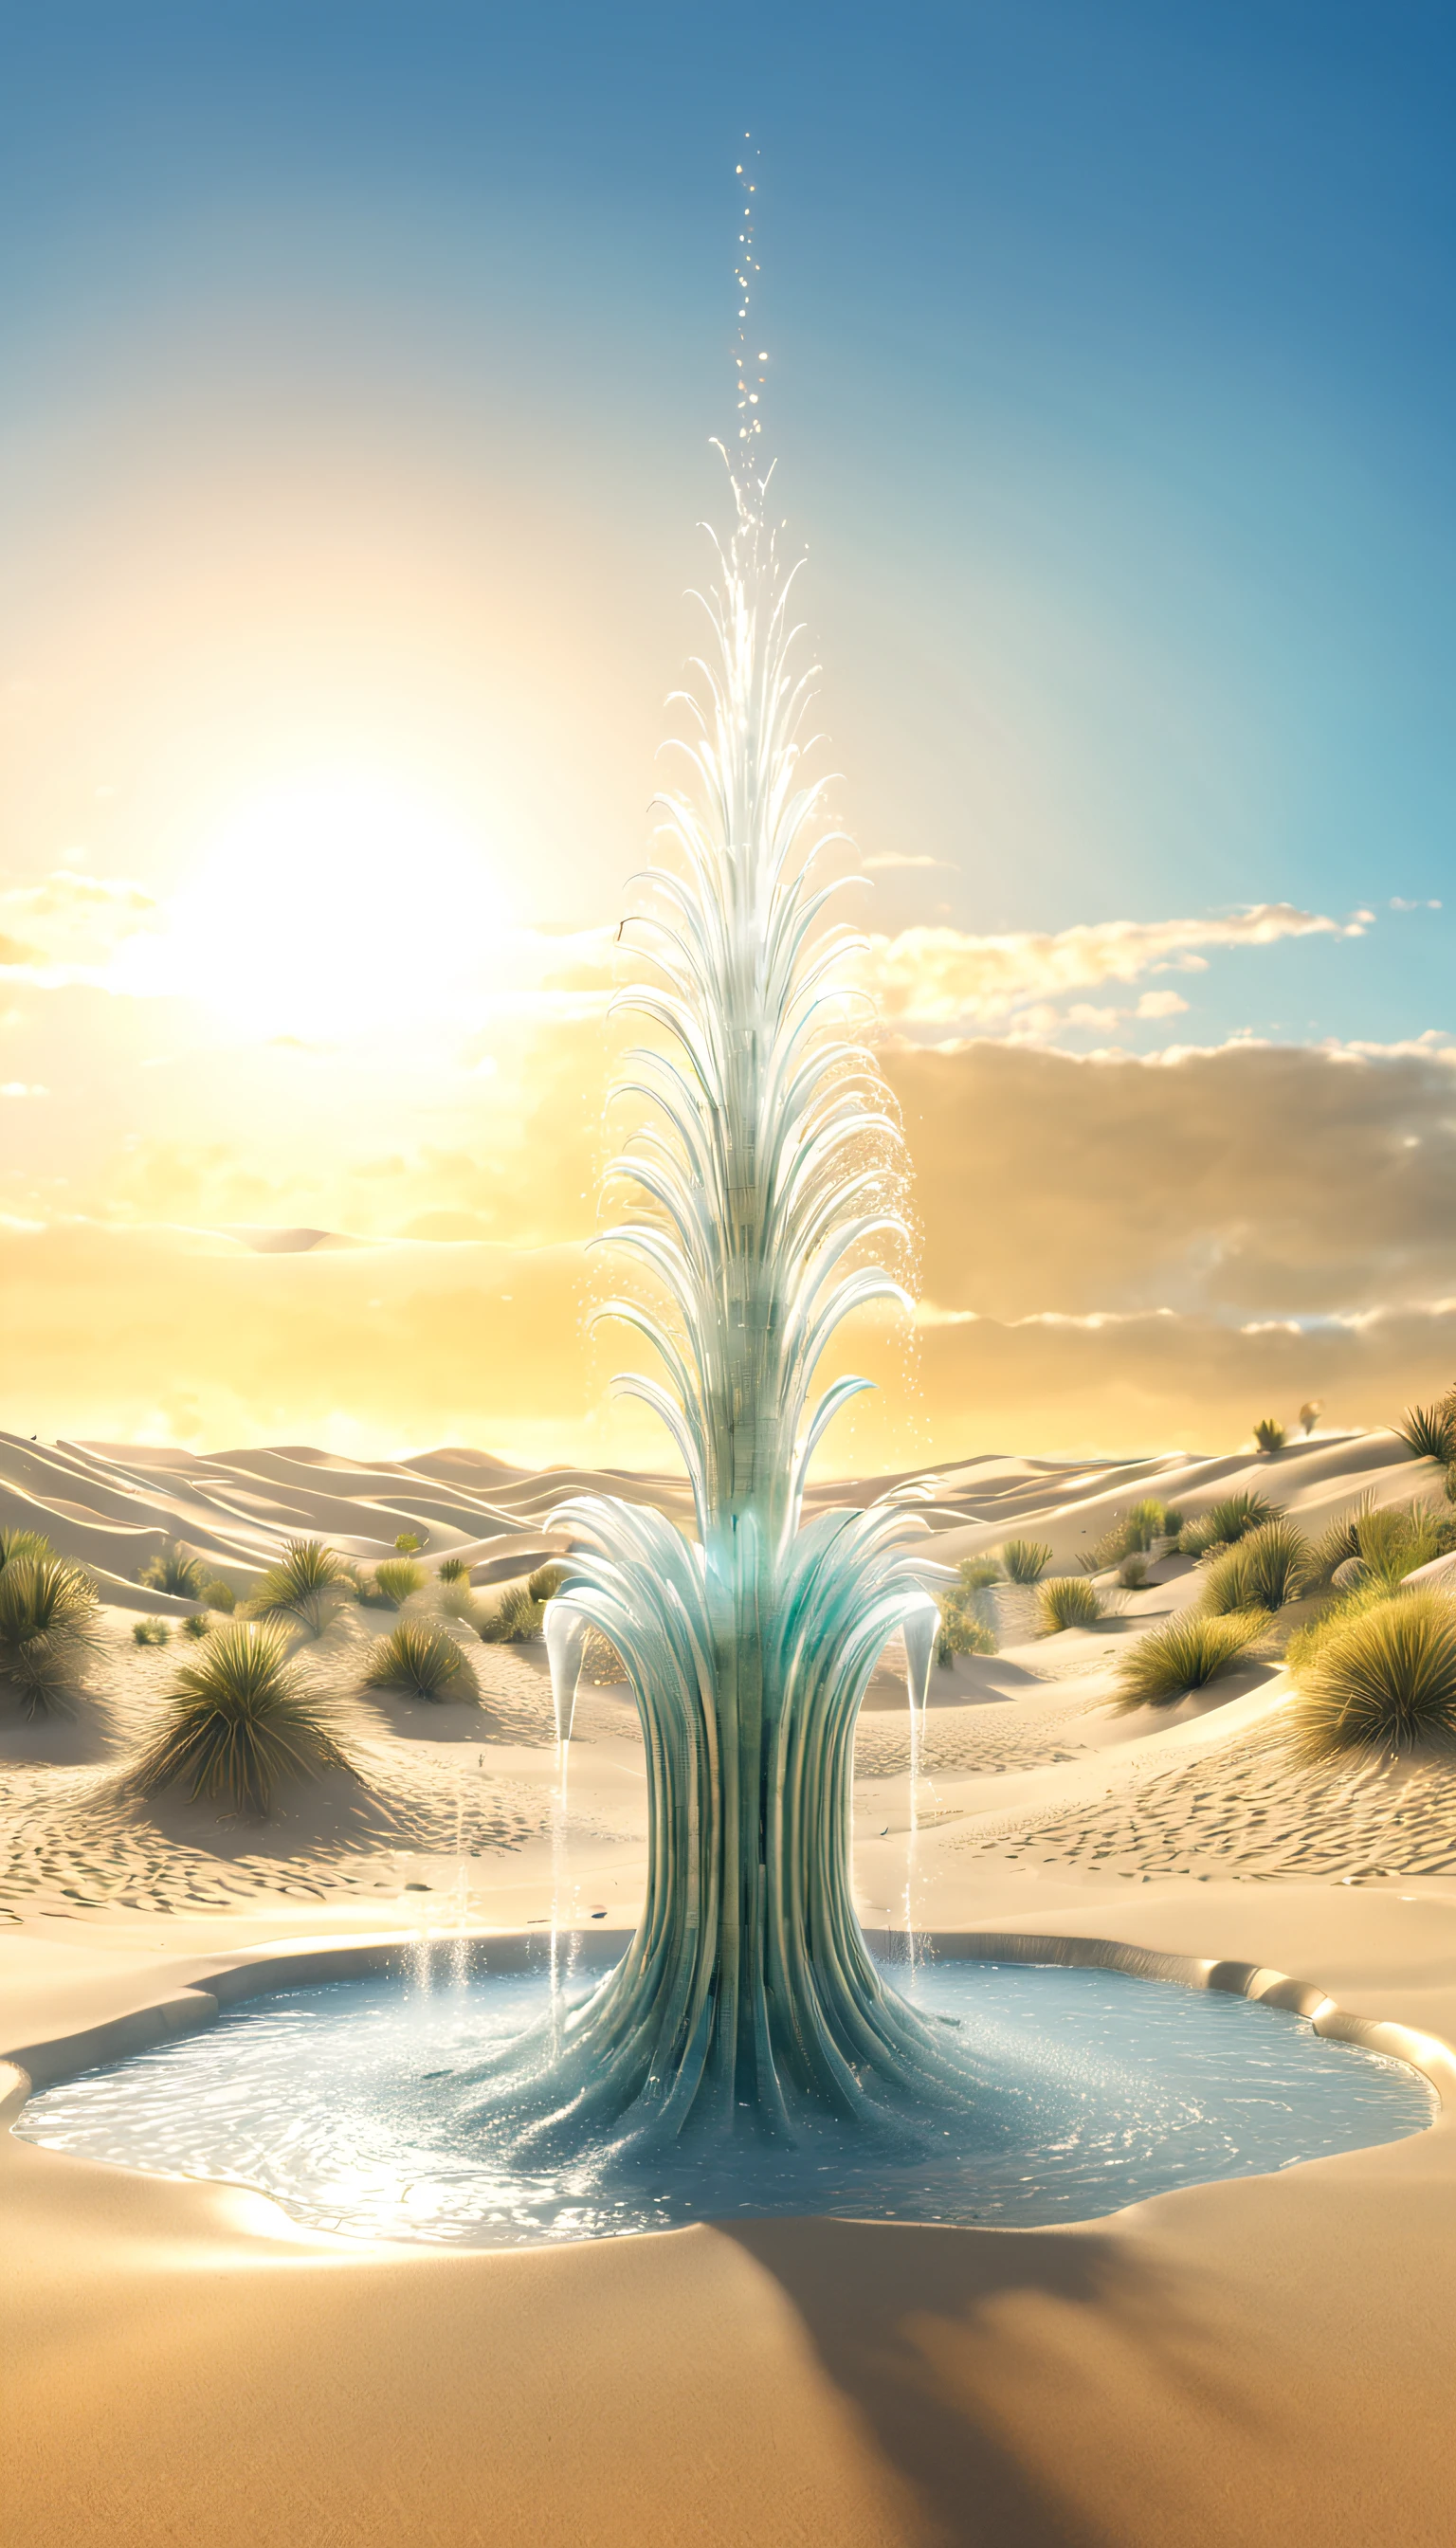 超现实的 3D 渲染，沙丘上描绘的大型控制论喷泉, 仙人掌形状的水龙头喷水, 喷水，沼泽地,空灵的，超级幻想 ，
背景：荒凉的沙丘，夕阳，骆驼趾，